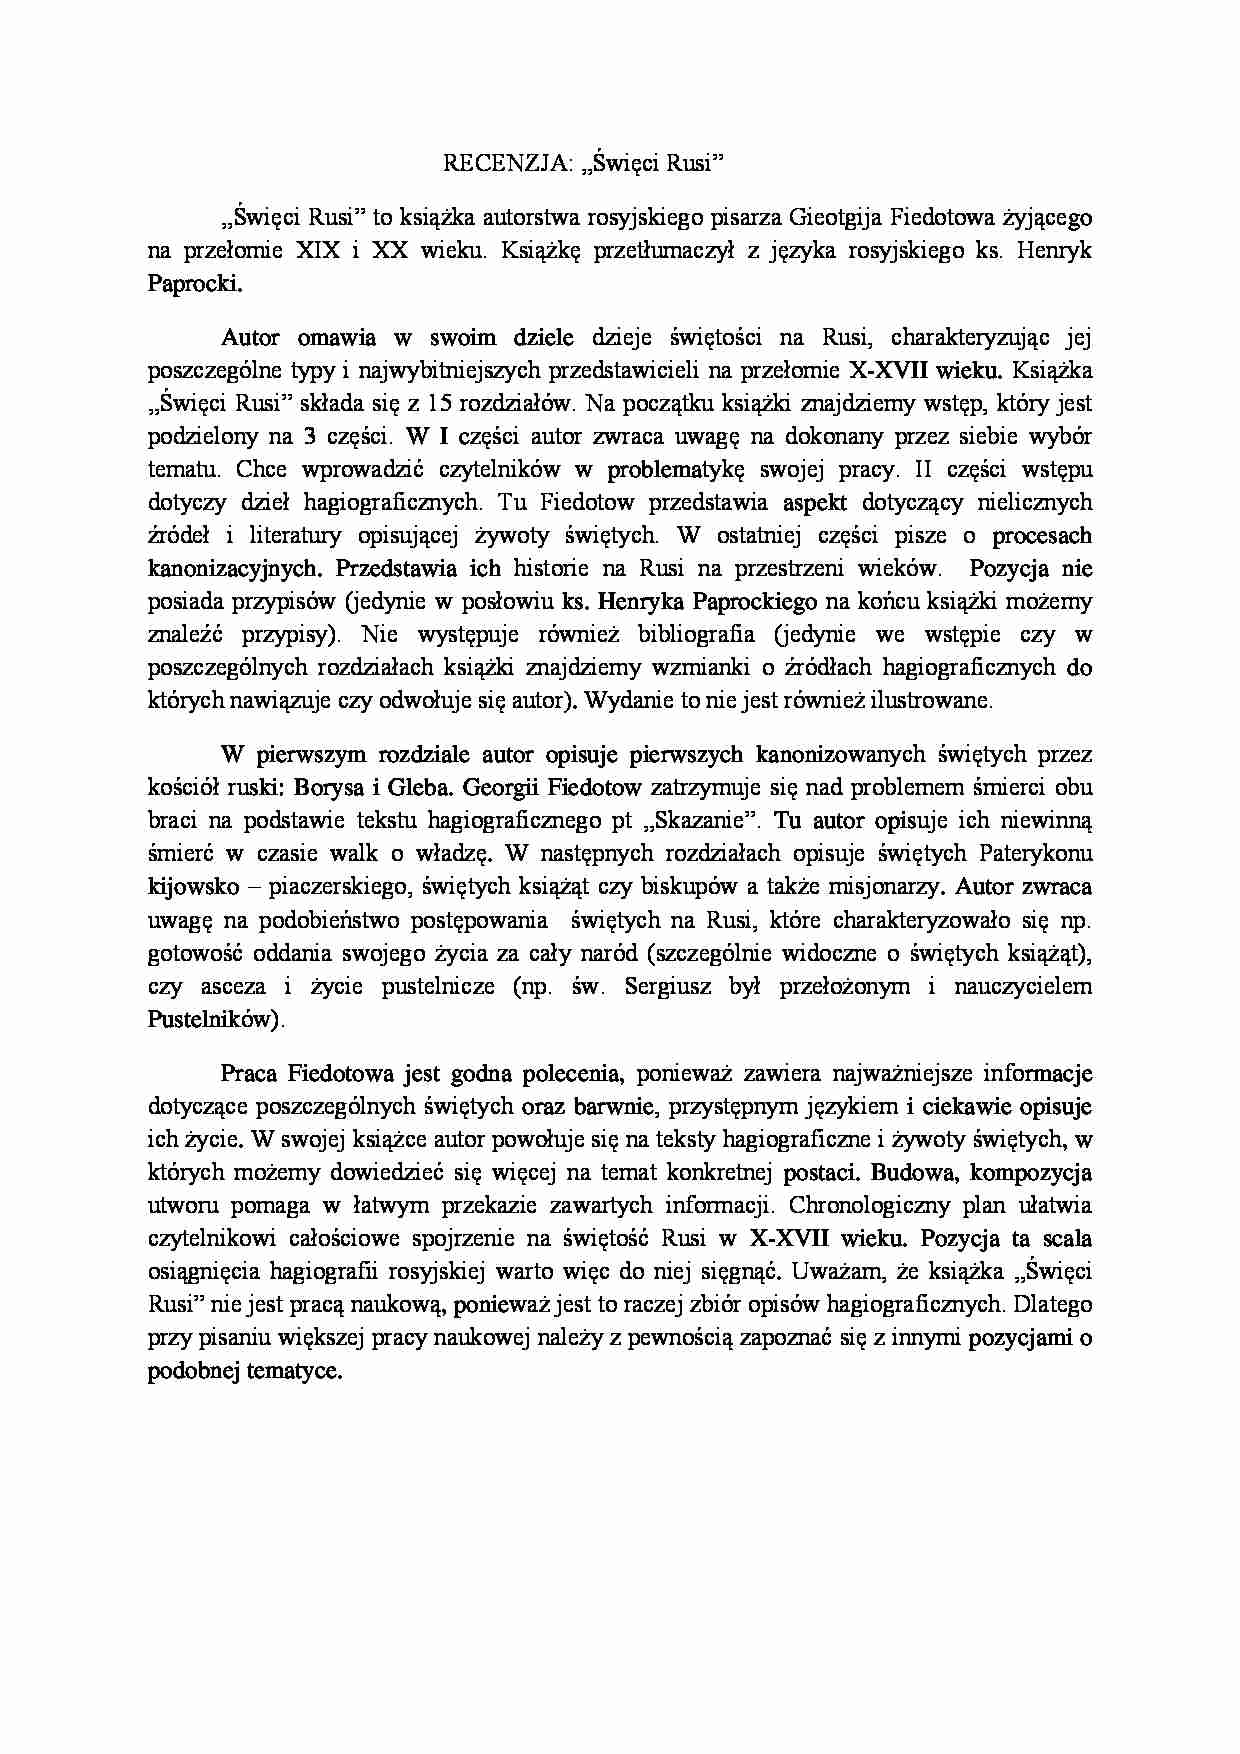 święci rusi kijowskiej - streszczenie - strona 1